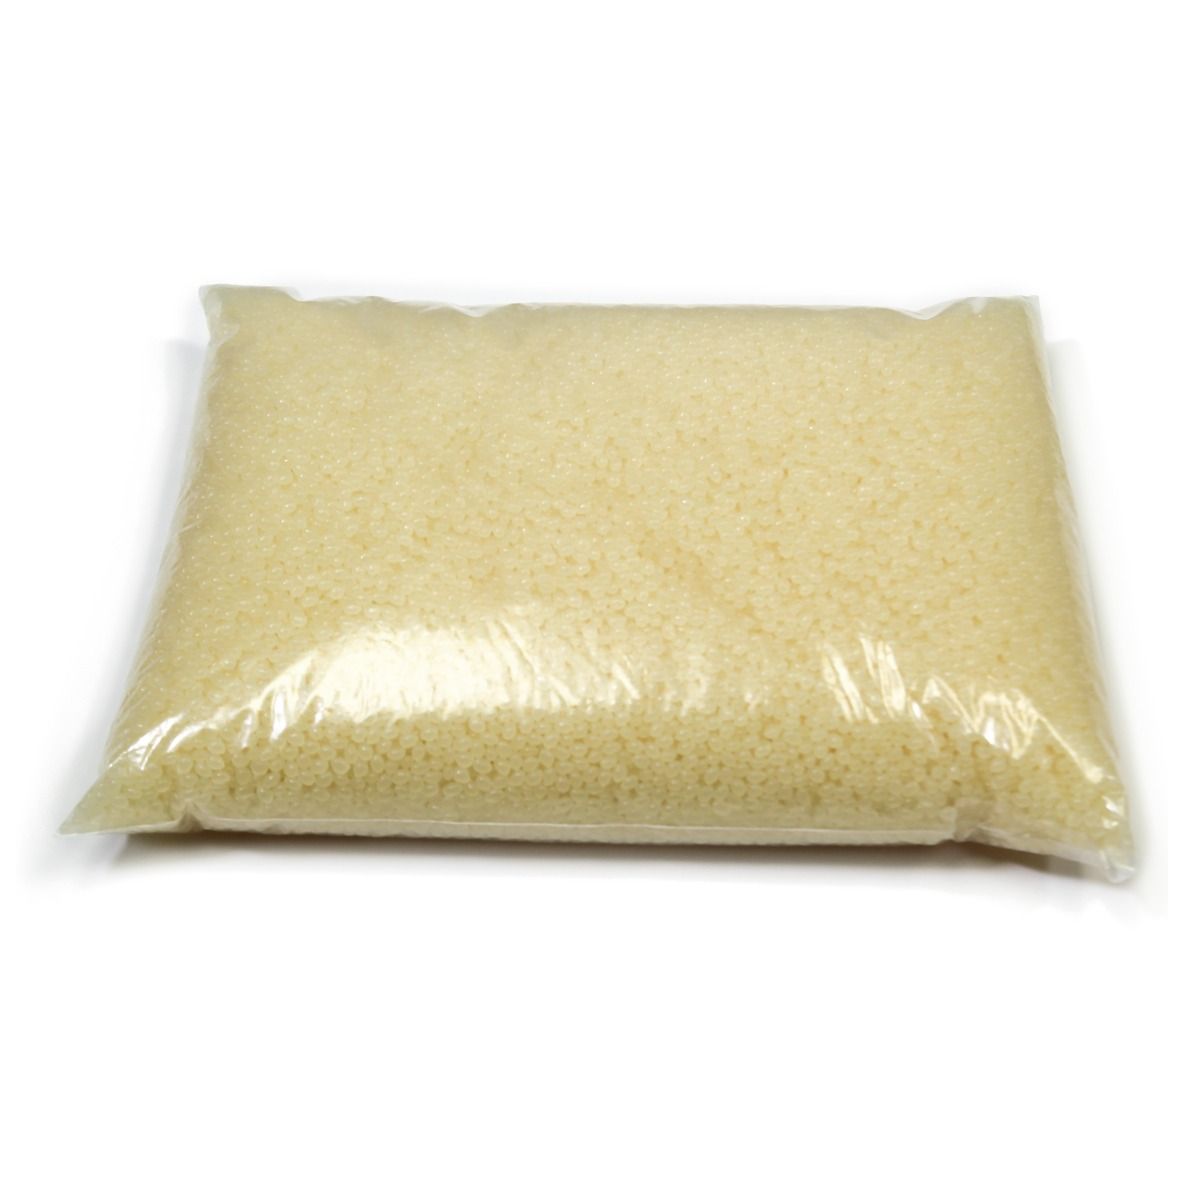 5 lb. Bag of Coverbind Premium Perfect Bind Adhesive